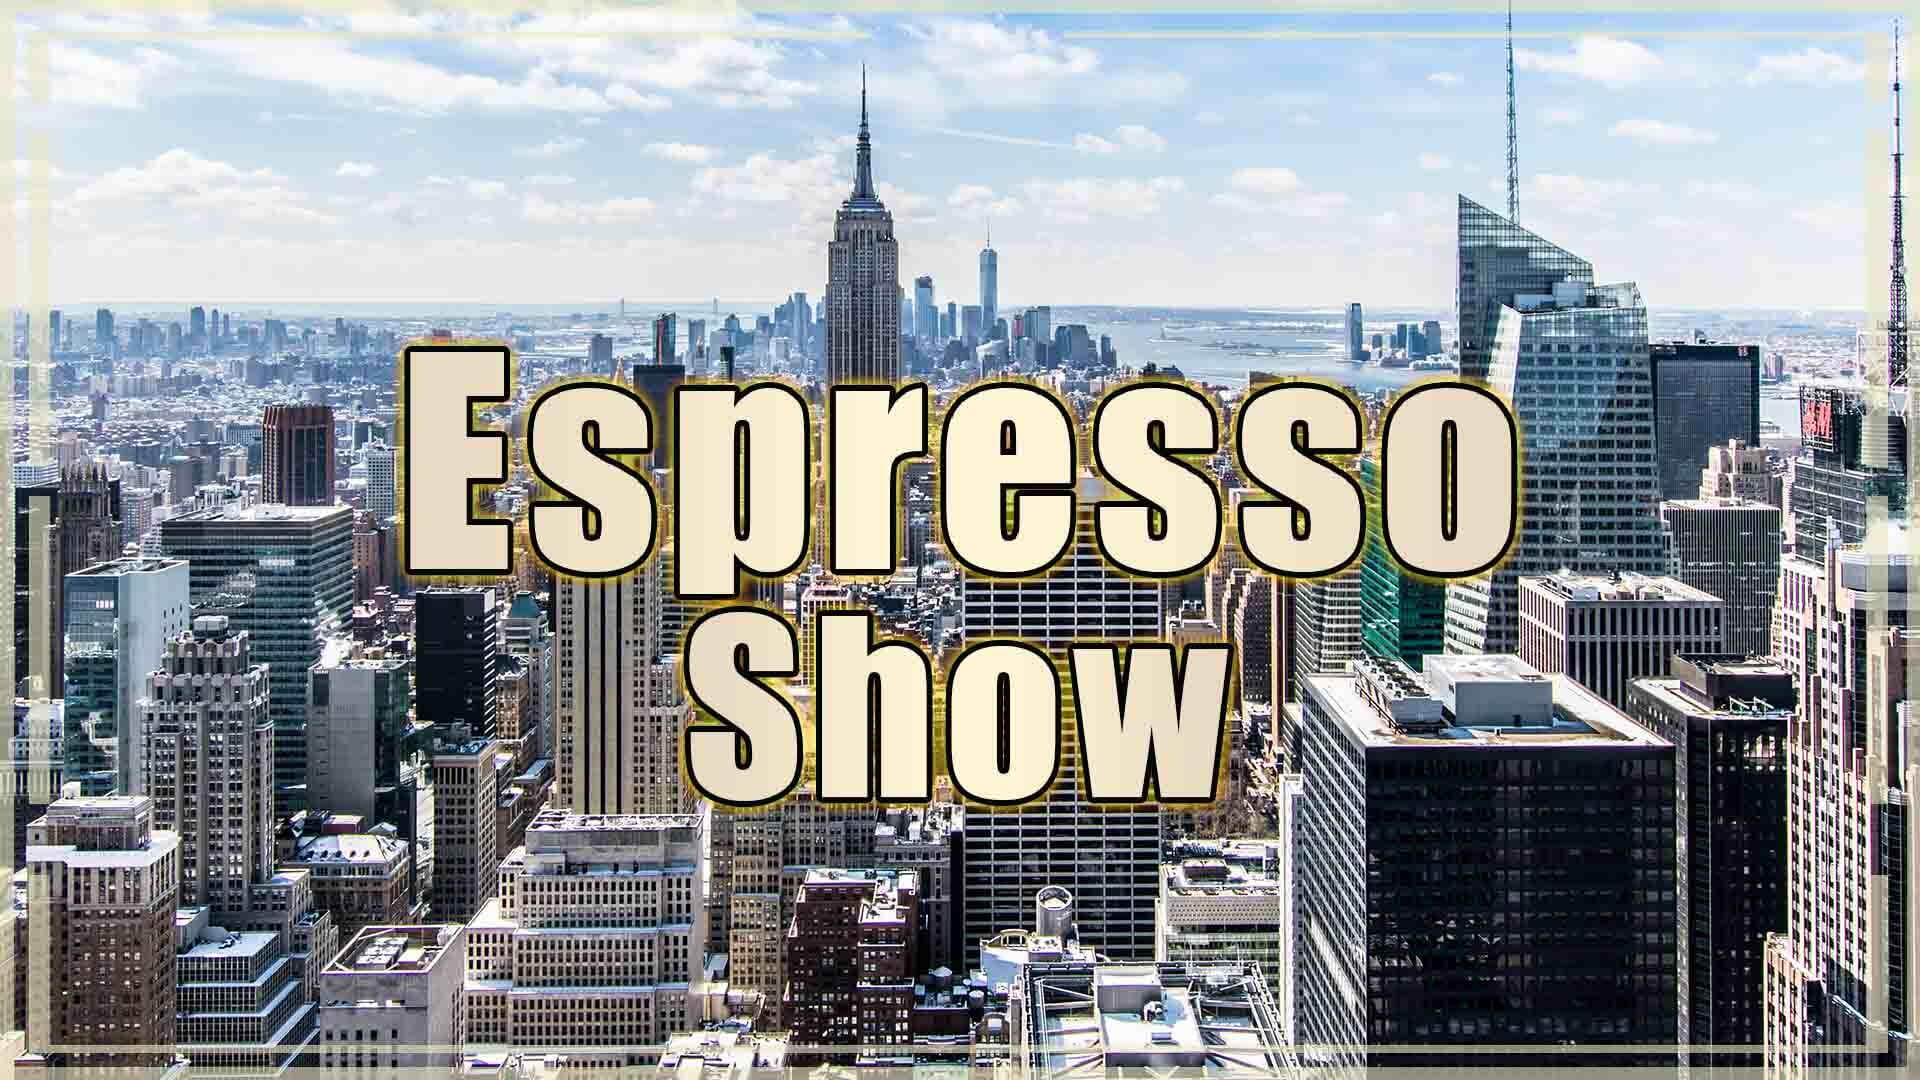 Espresso Show 4-18-18 - SLING TV - Twoja opcja na legalną, polską telewizję w USA - prezes Rafał Stykowski o szczegółach. A dzisiaj ponownie TAX DAY: dlaczego przeniesiono termin rozliczeń podatkowych na dzisiaj?